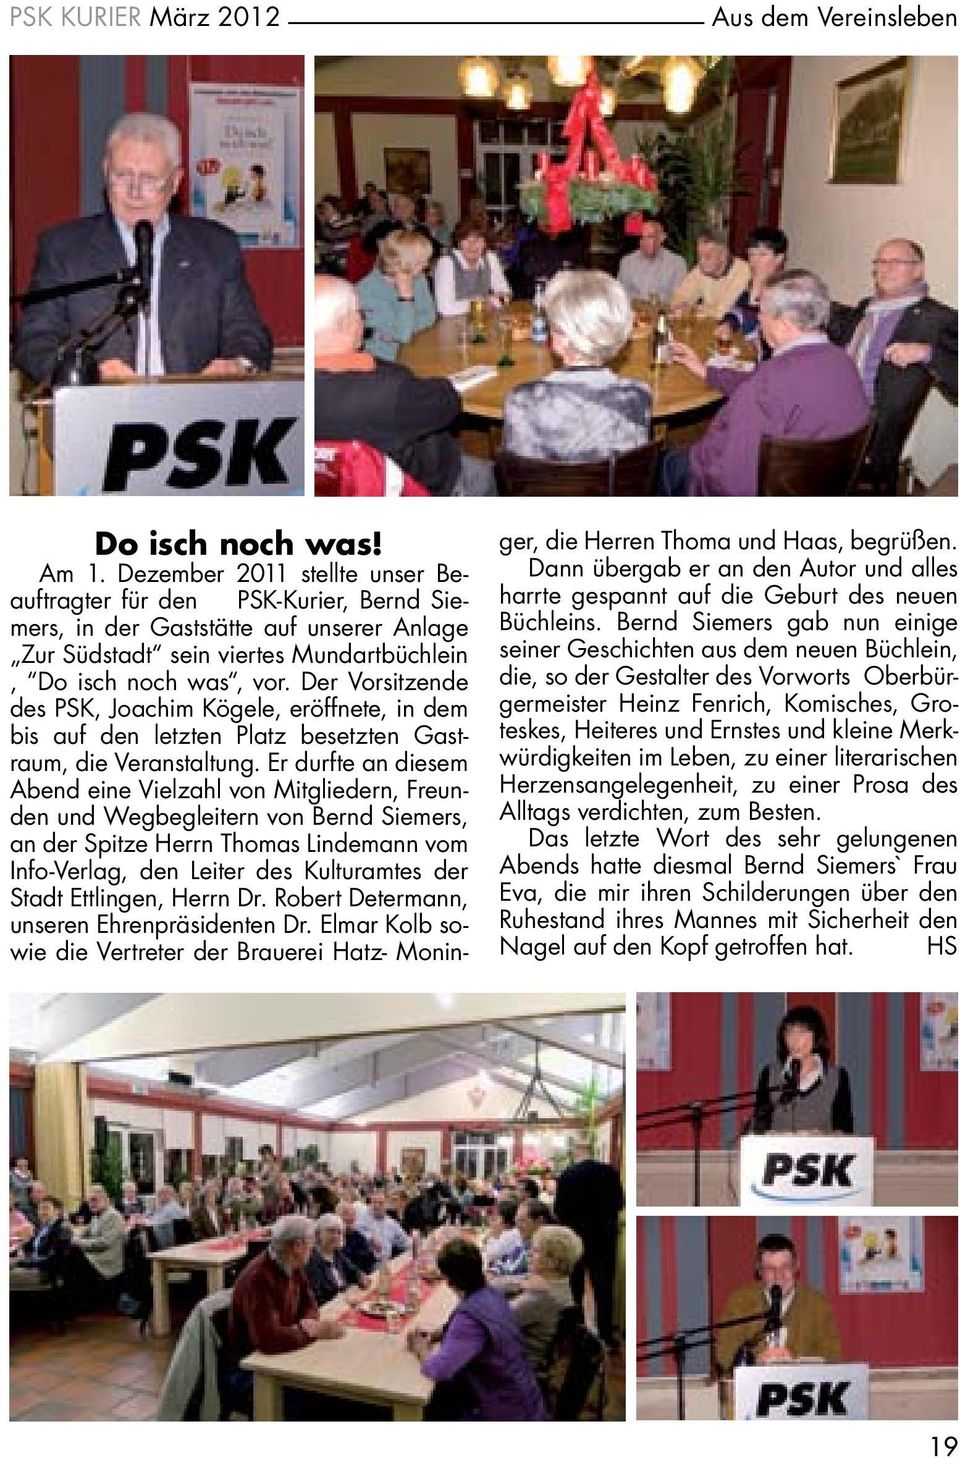 Der Vorsitzende des PSK, Joachim Kögele, eröffnete, in dem bis auf den letzten Platz besetzten Gastraum, die Veranstaltung.